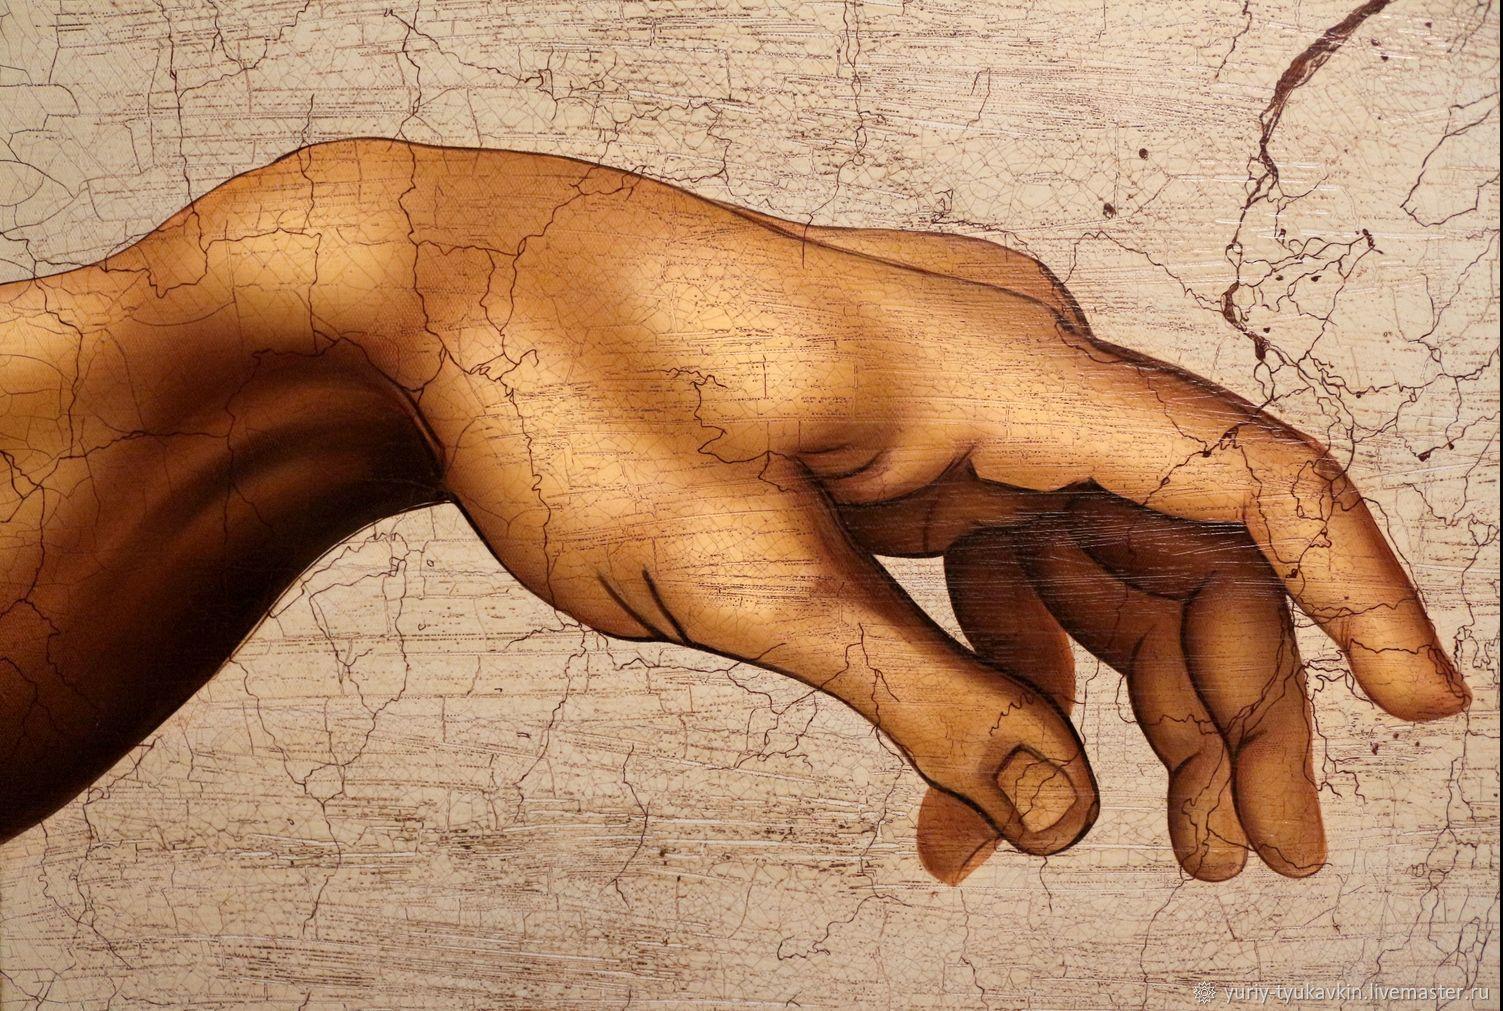 Соприкосновение с кожей. Микеланджело Сотворение Адама. Микеланджело Буонарроти Сотворение Адама руки. "Сотворение Адама" Микеланджело, 1511. Леонардо да Винчи Сотворение Адама.